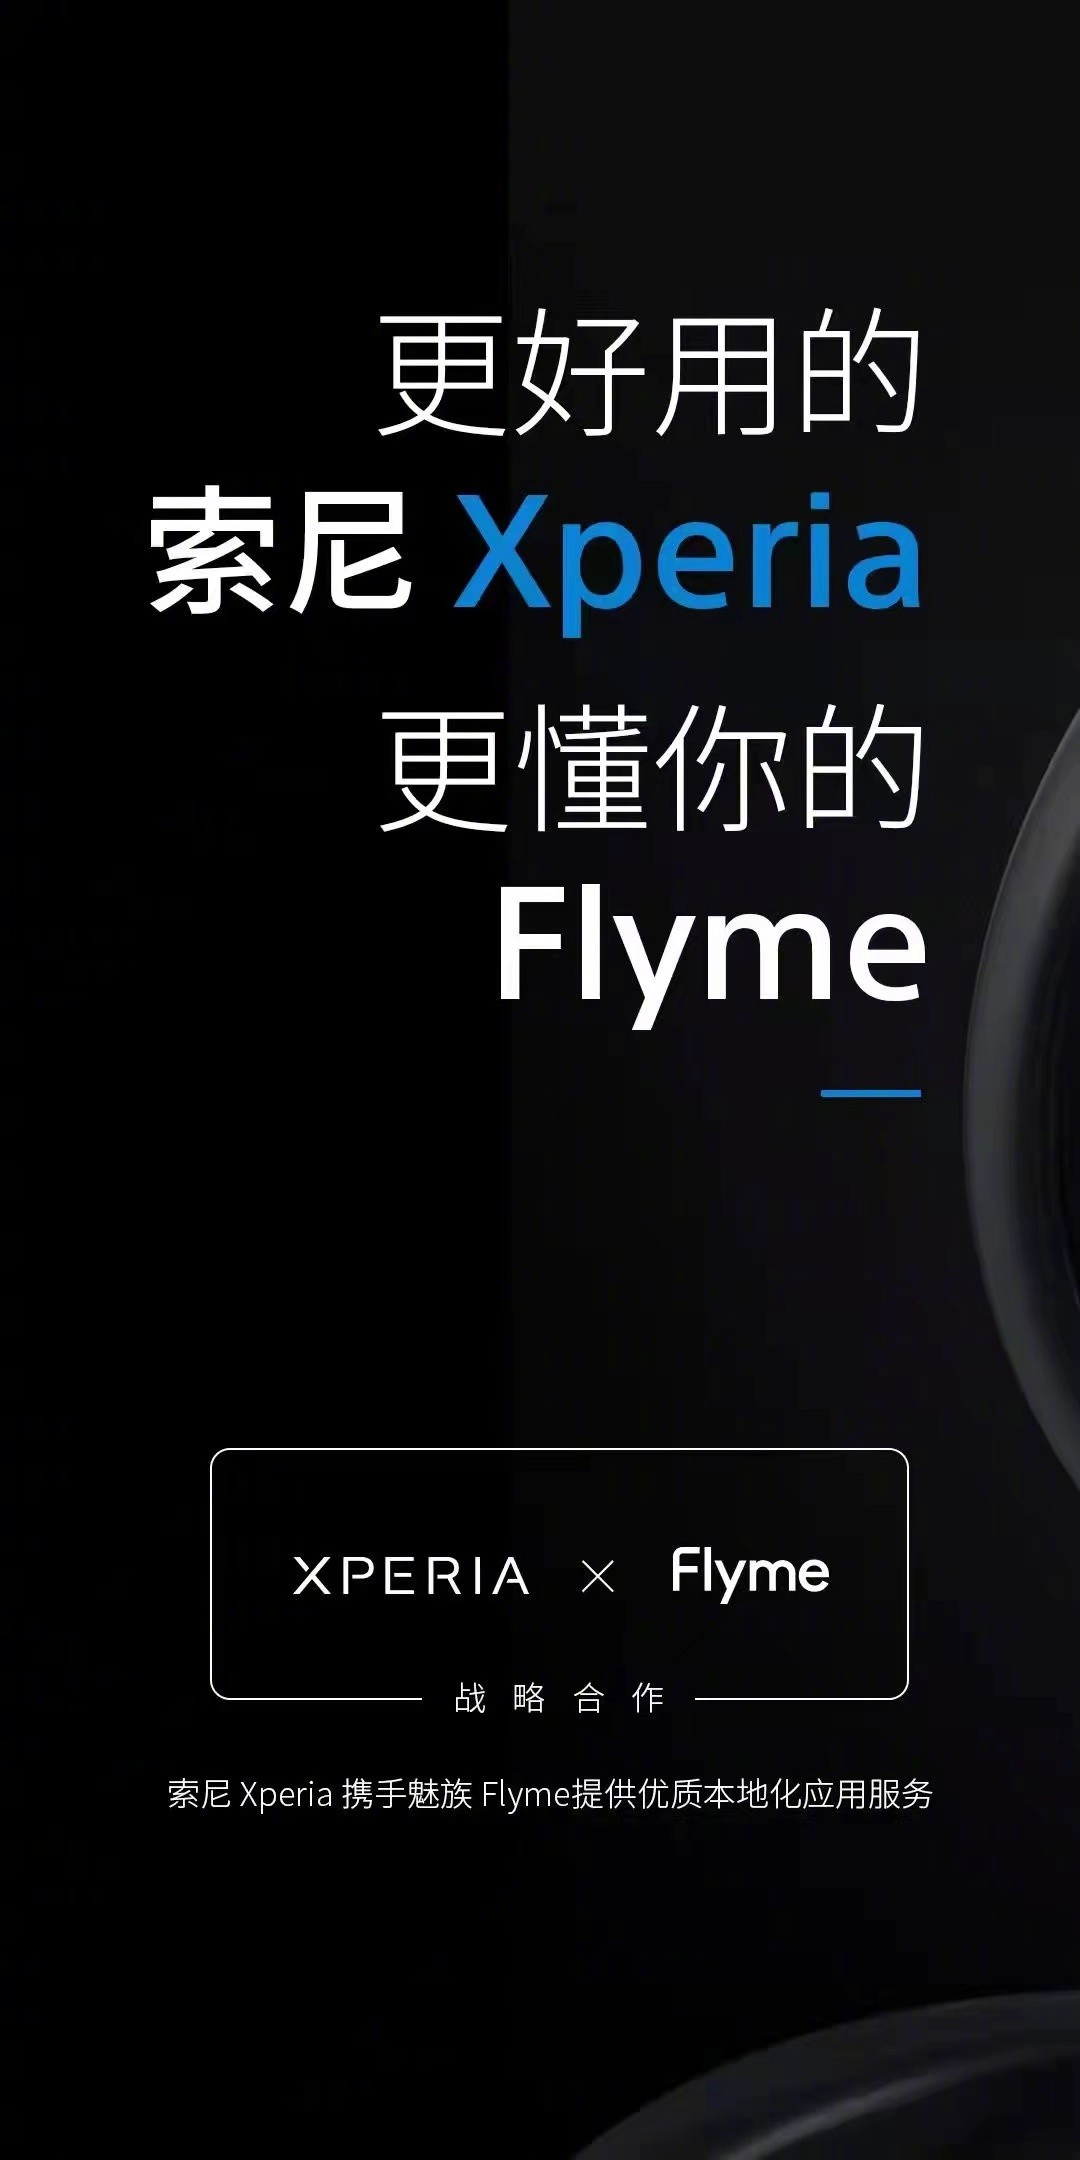 Японская классика с китайским привкусом. На смартфонах Sony появится оболочка Meizu Flyme или её части